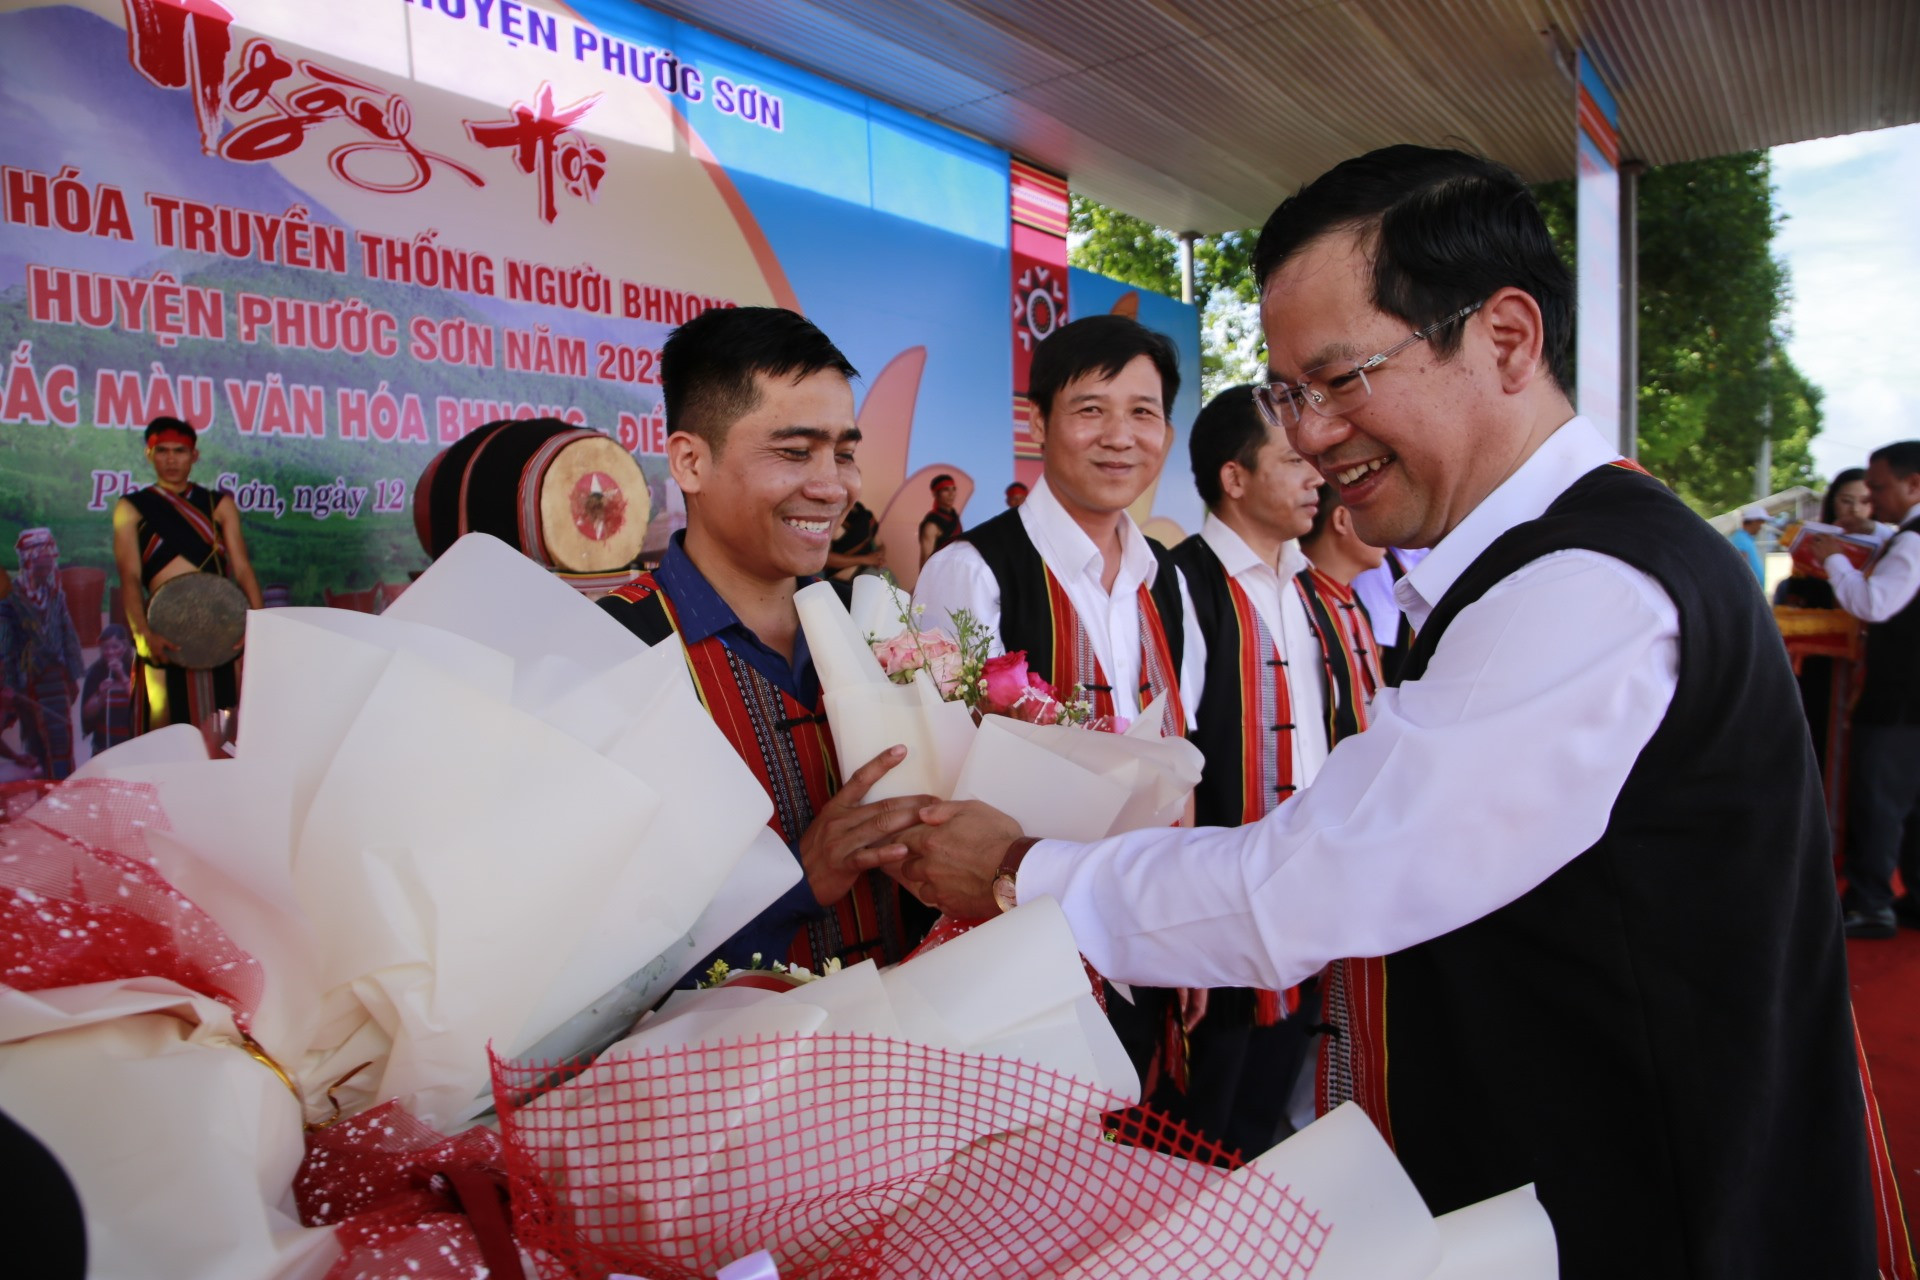 Lãnh đạo huyện Phước Sơn tặng hoa và cờ lưu niệm cho các đoàn tham gia ngày hội. Ảnh: A.N